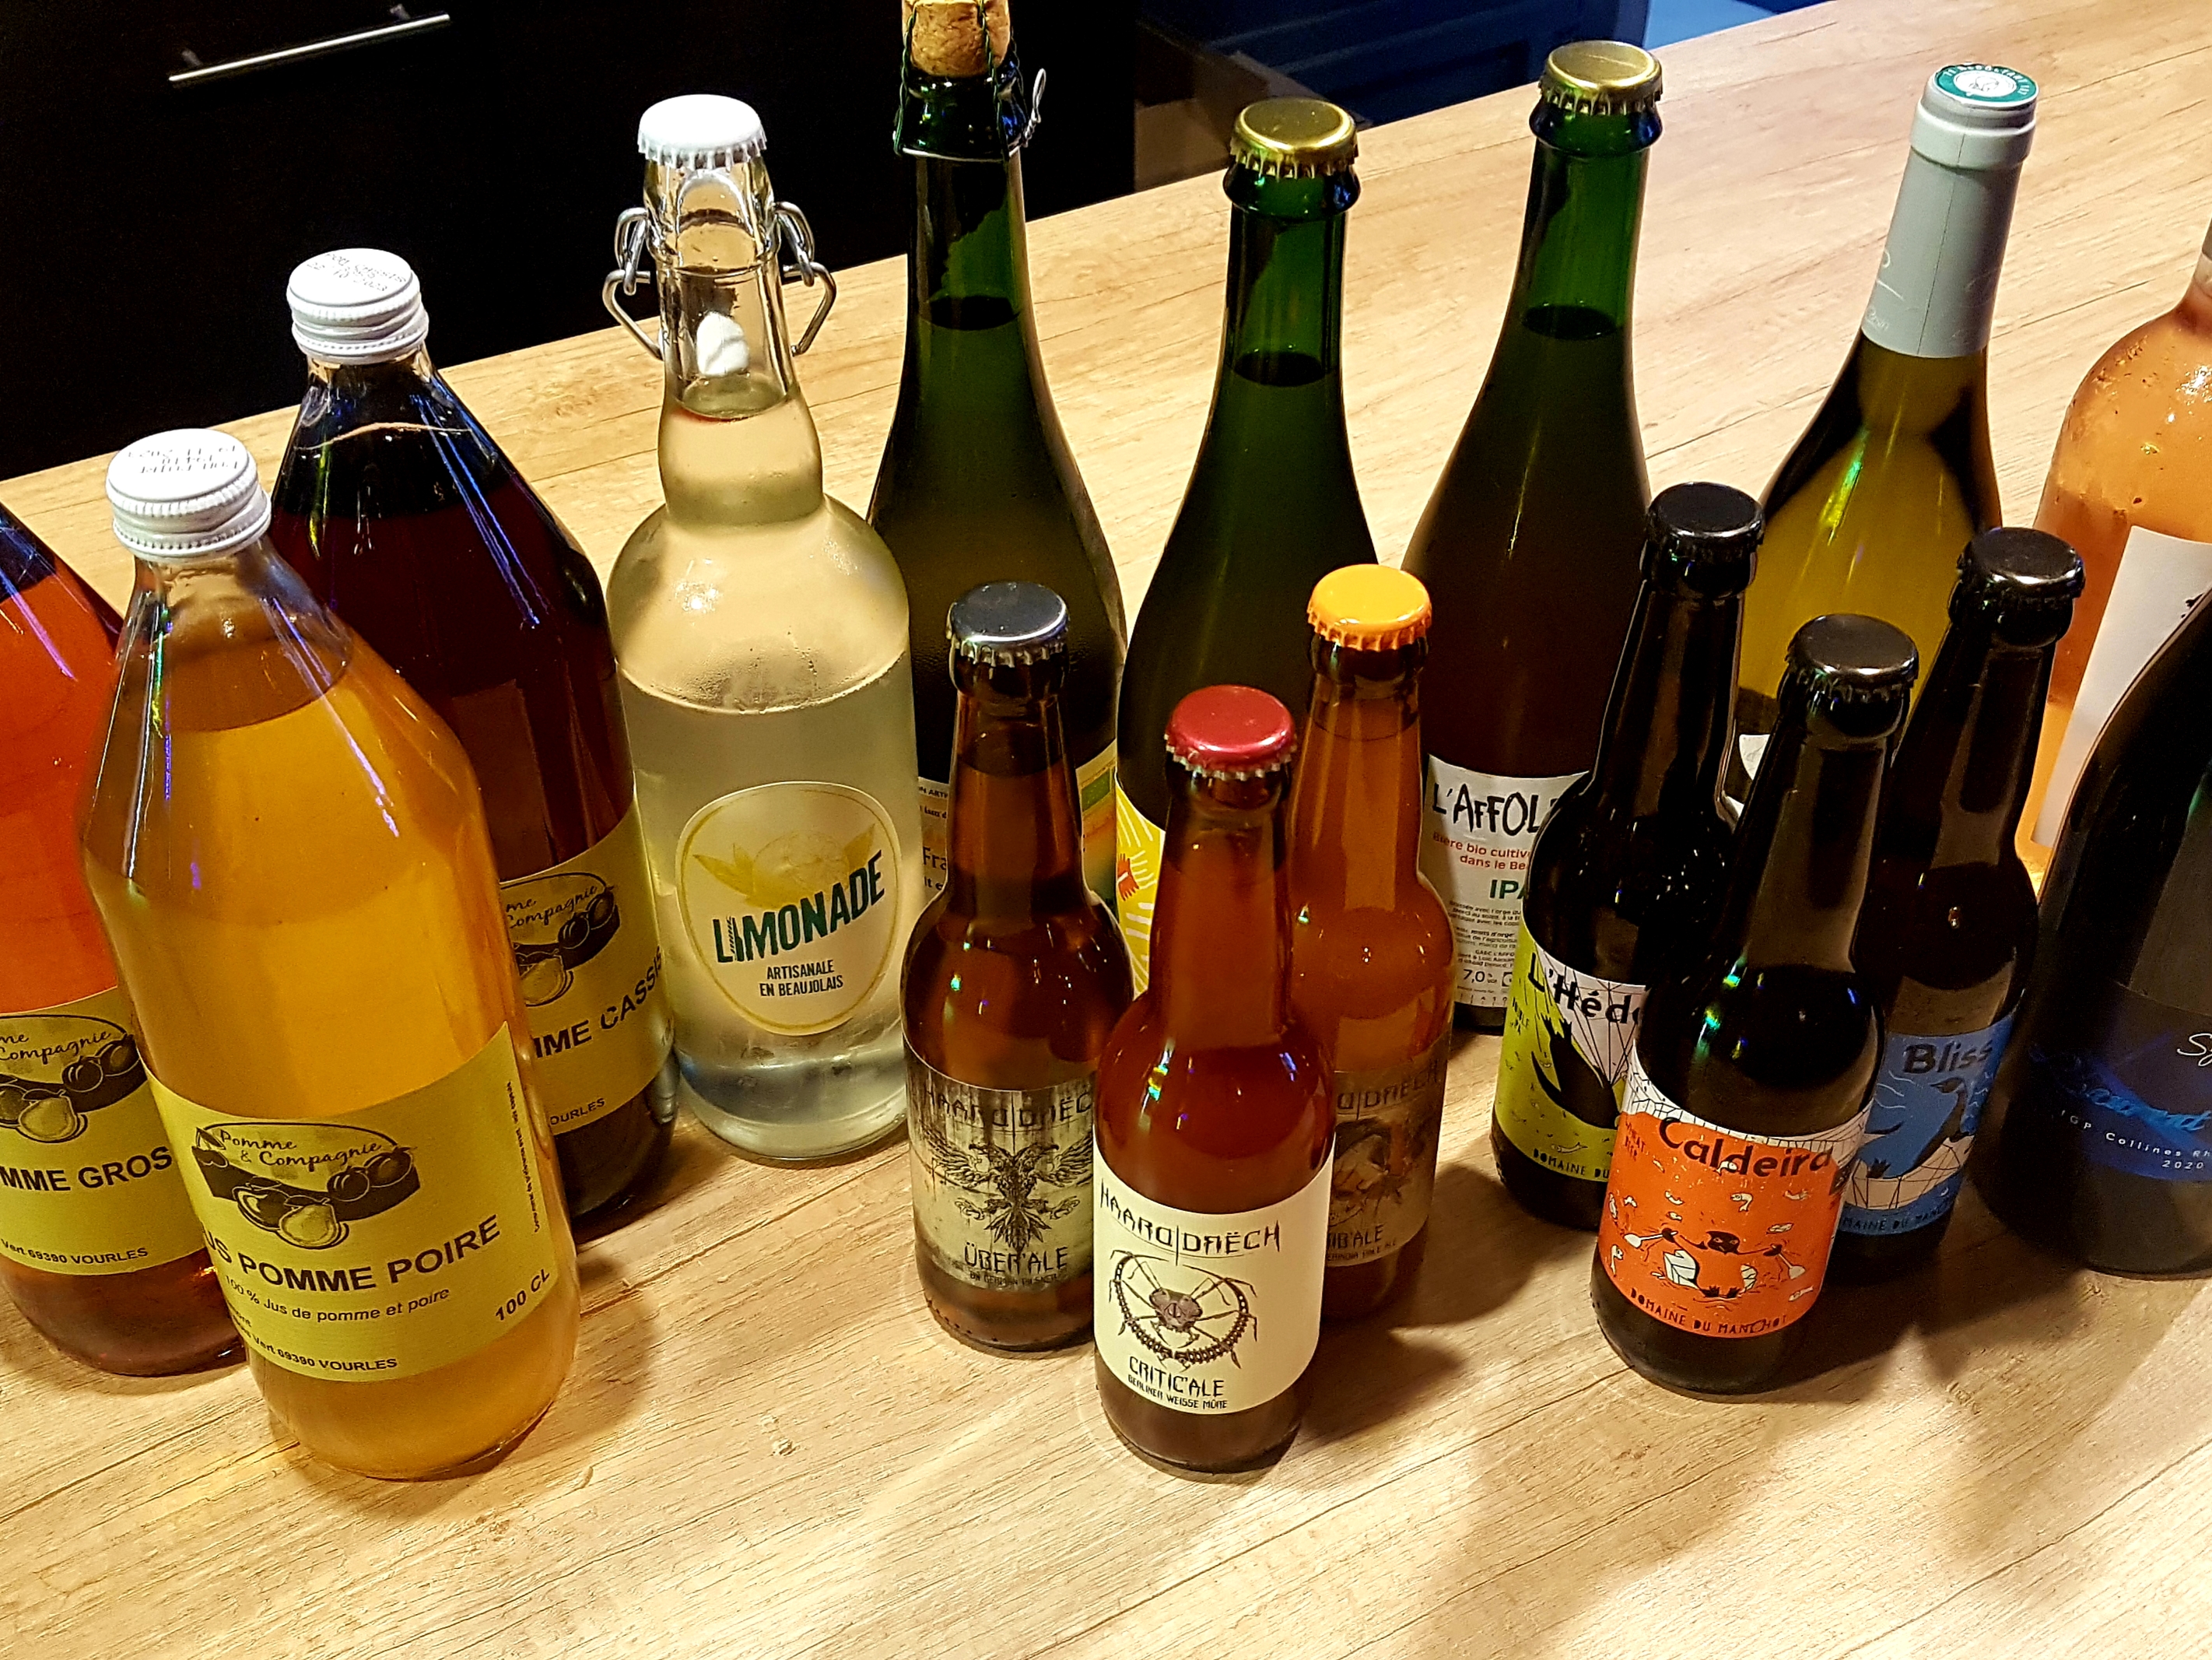 Un photo de bouteilles de bières, vin, limonade et cidres